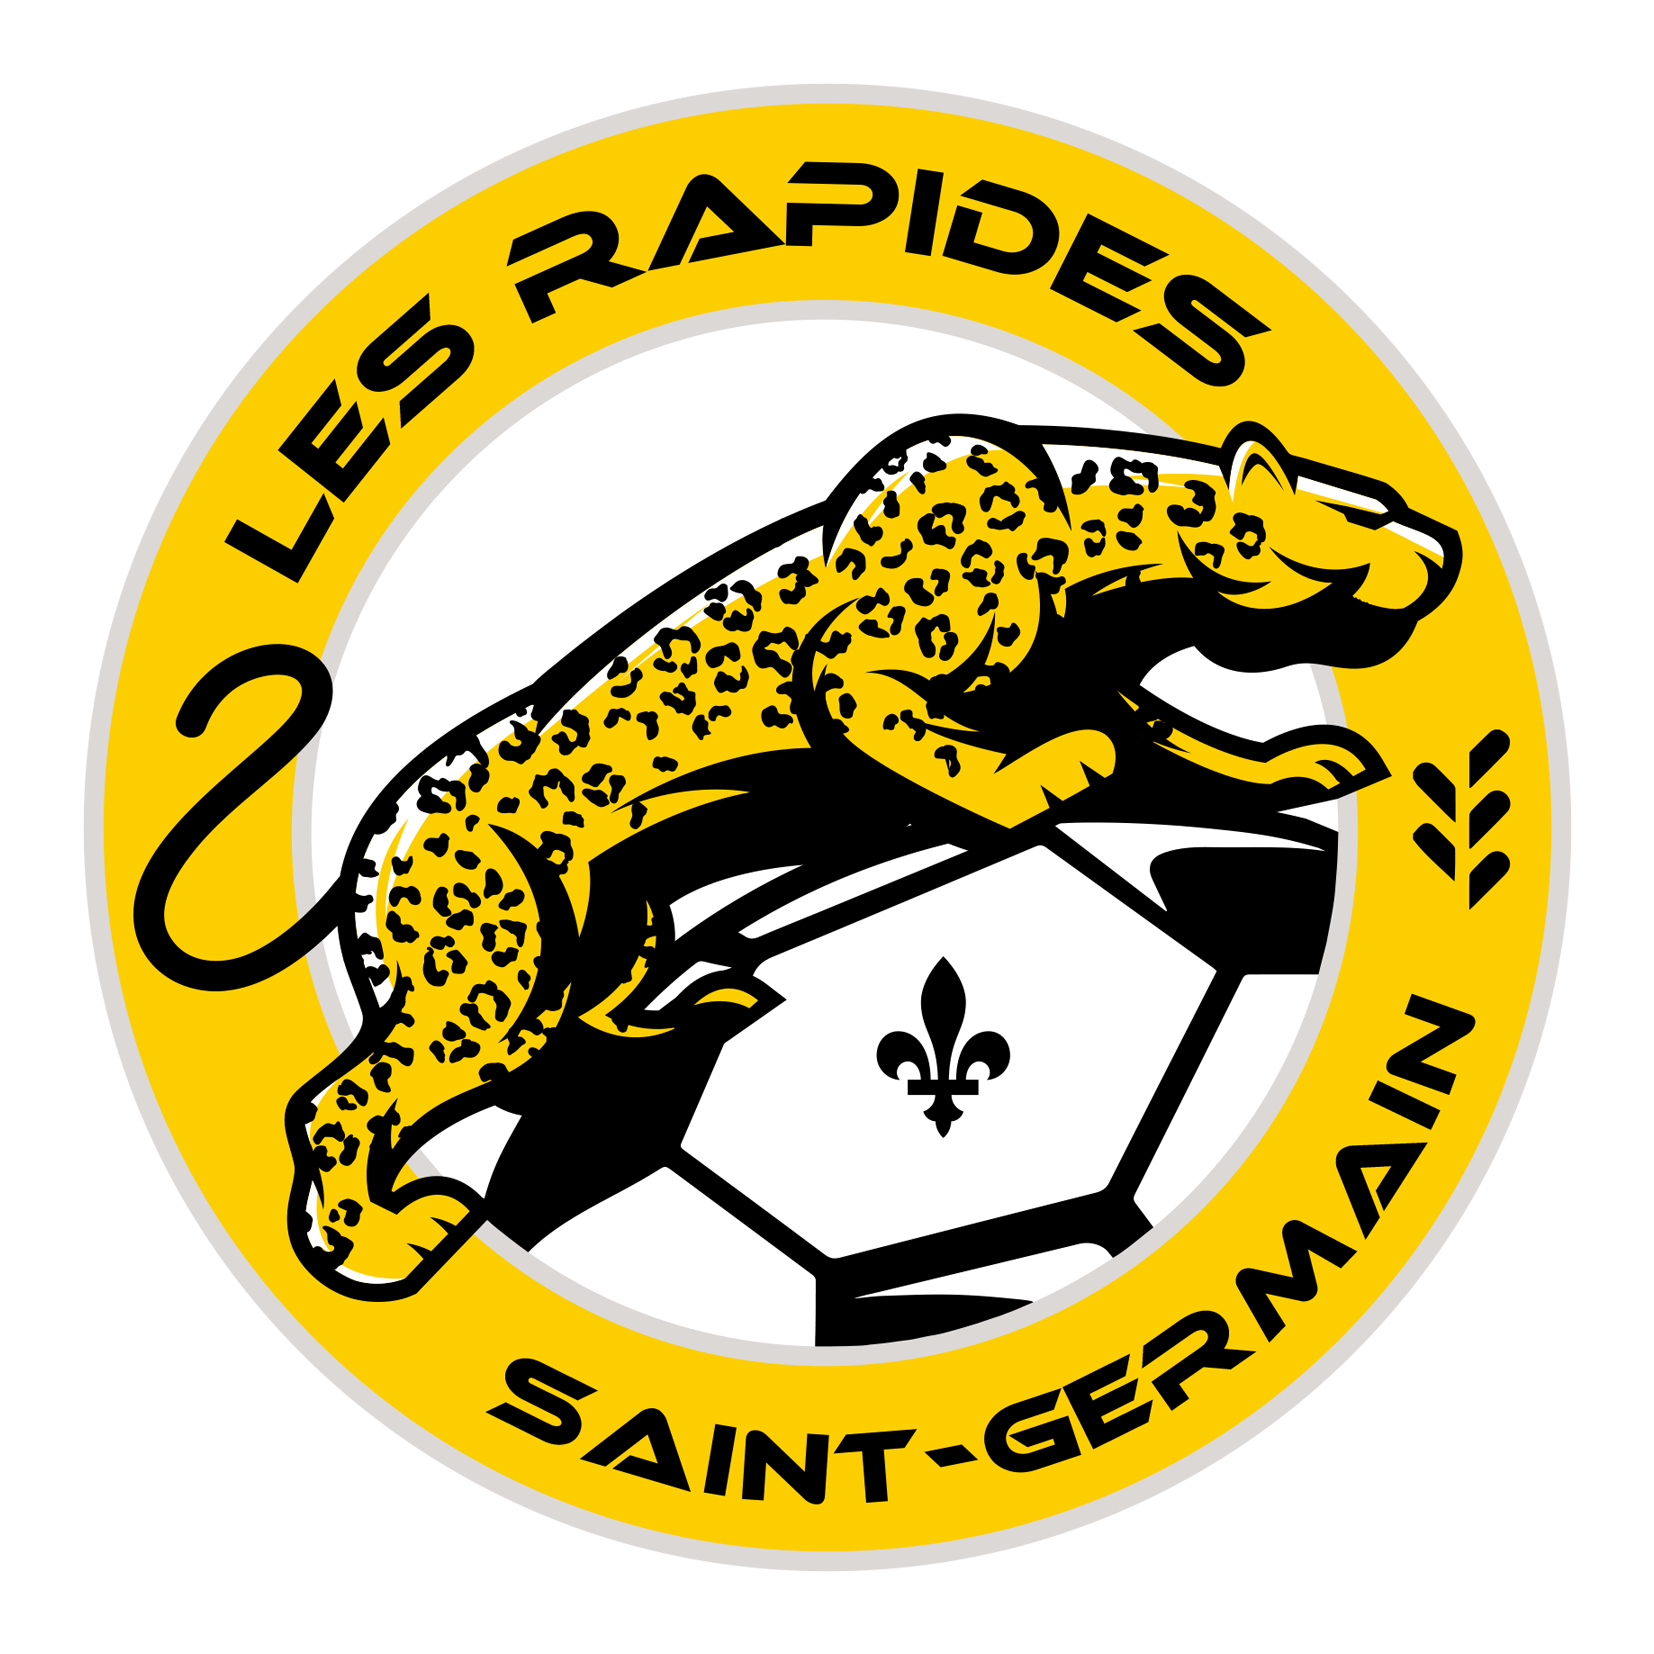 Club de soccer Les Rapides de Saint-Germain